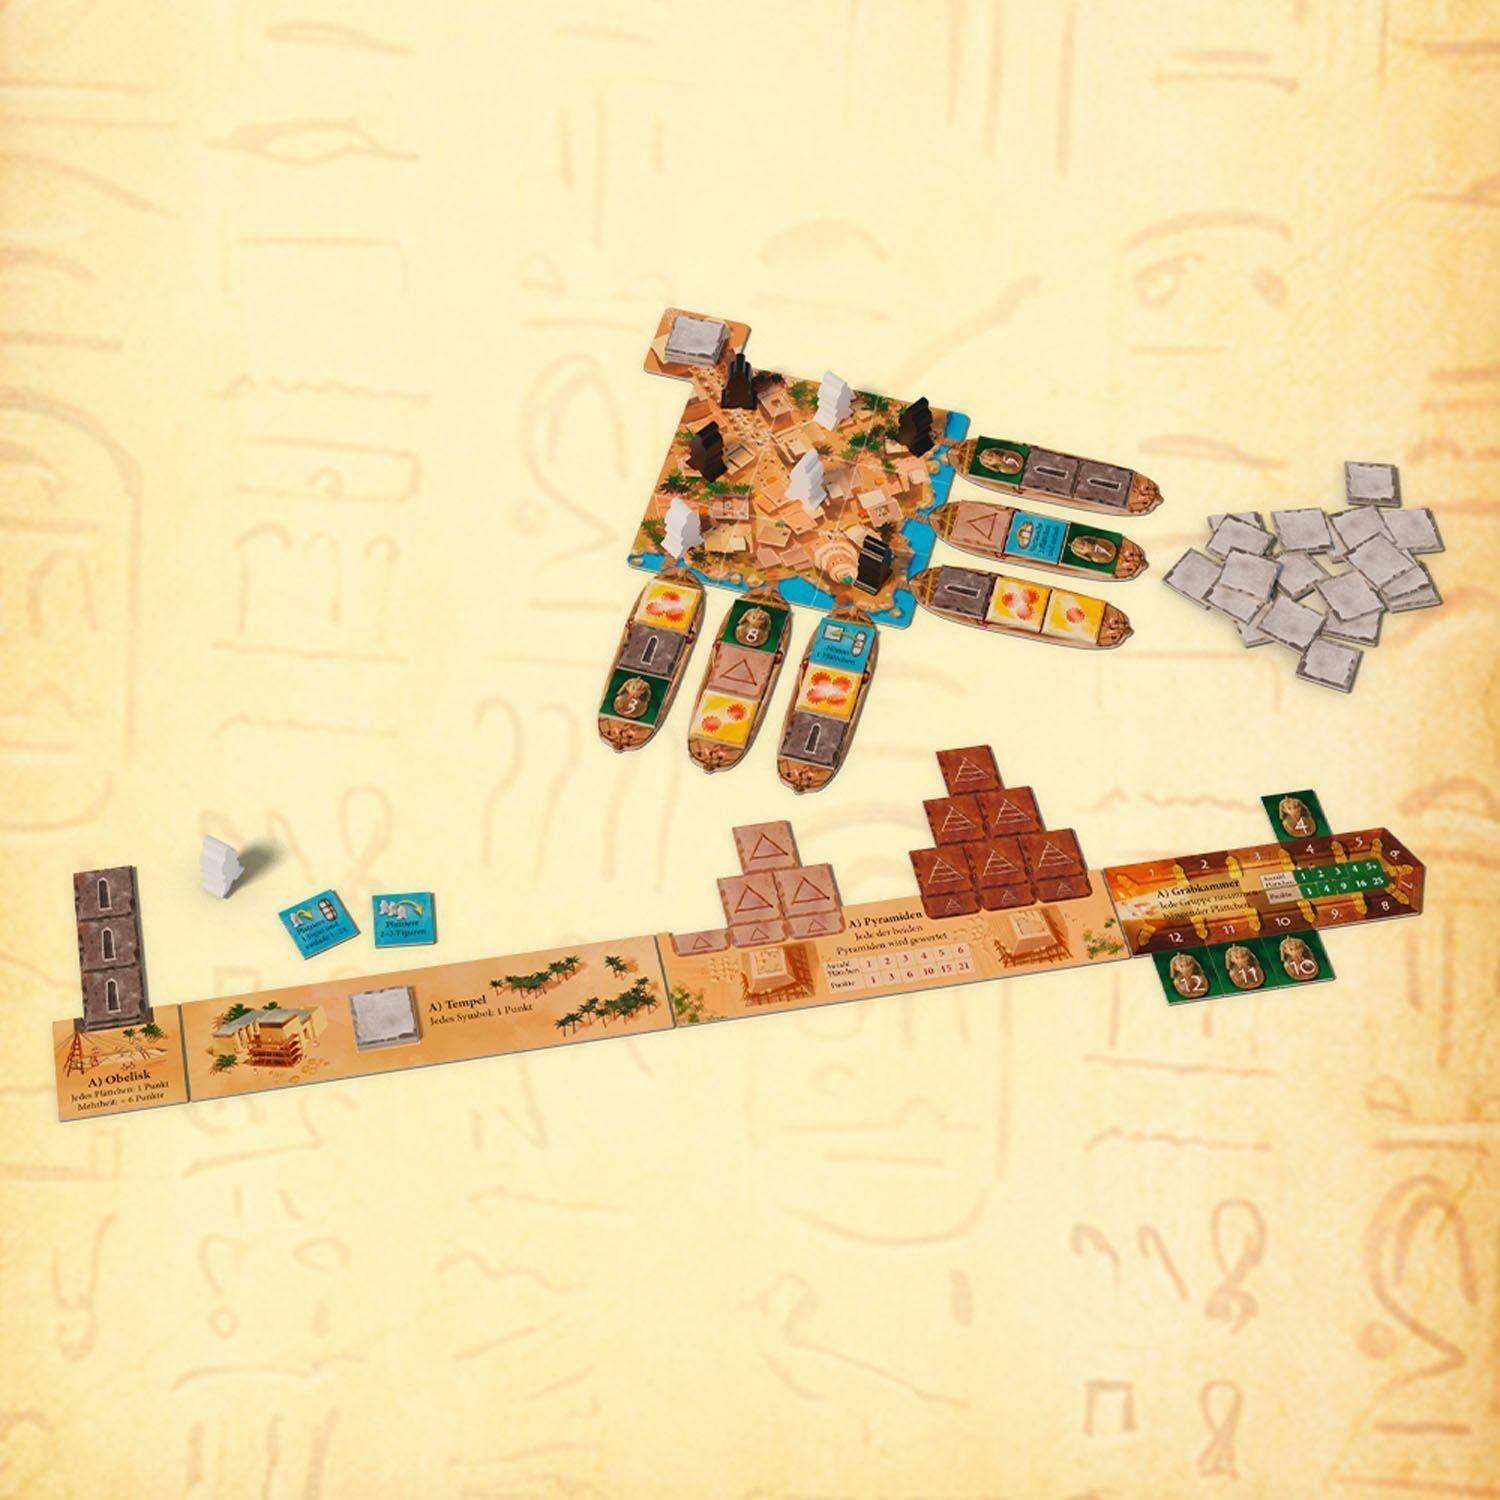 Imhotep Kosmos Spiel, Das Duell -